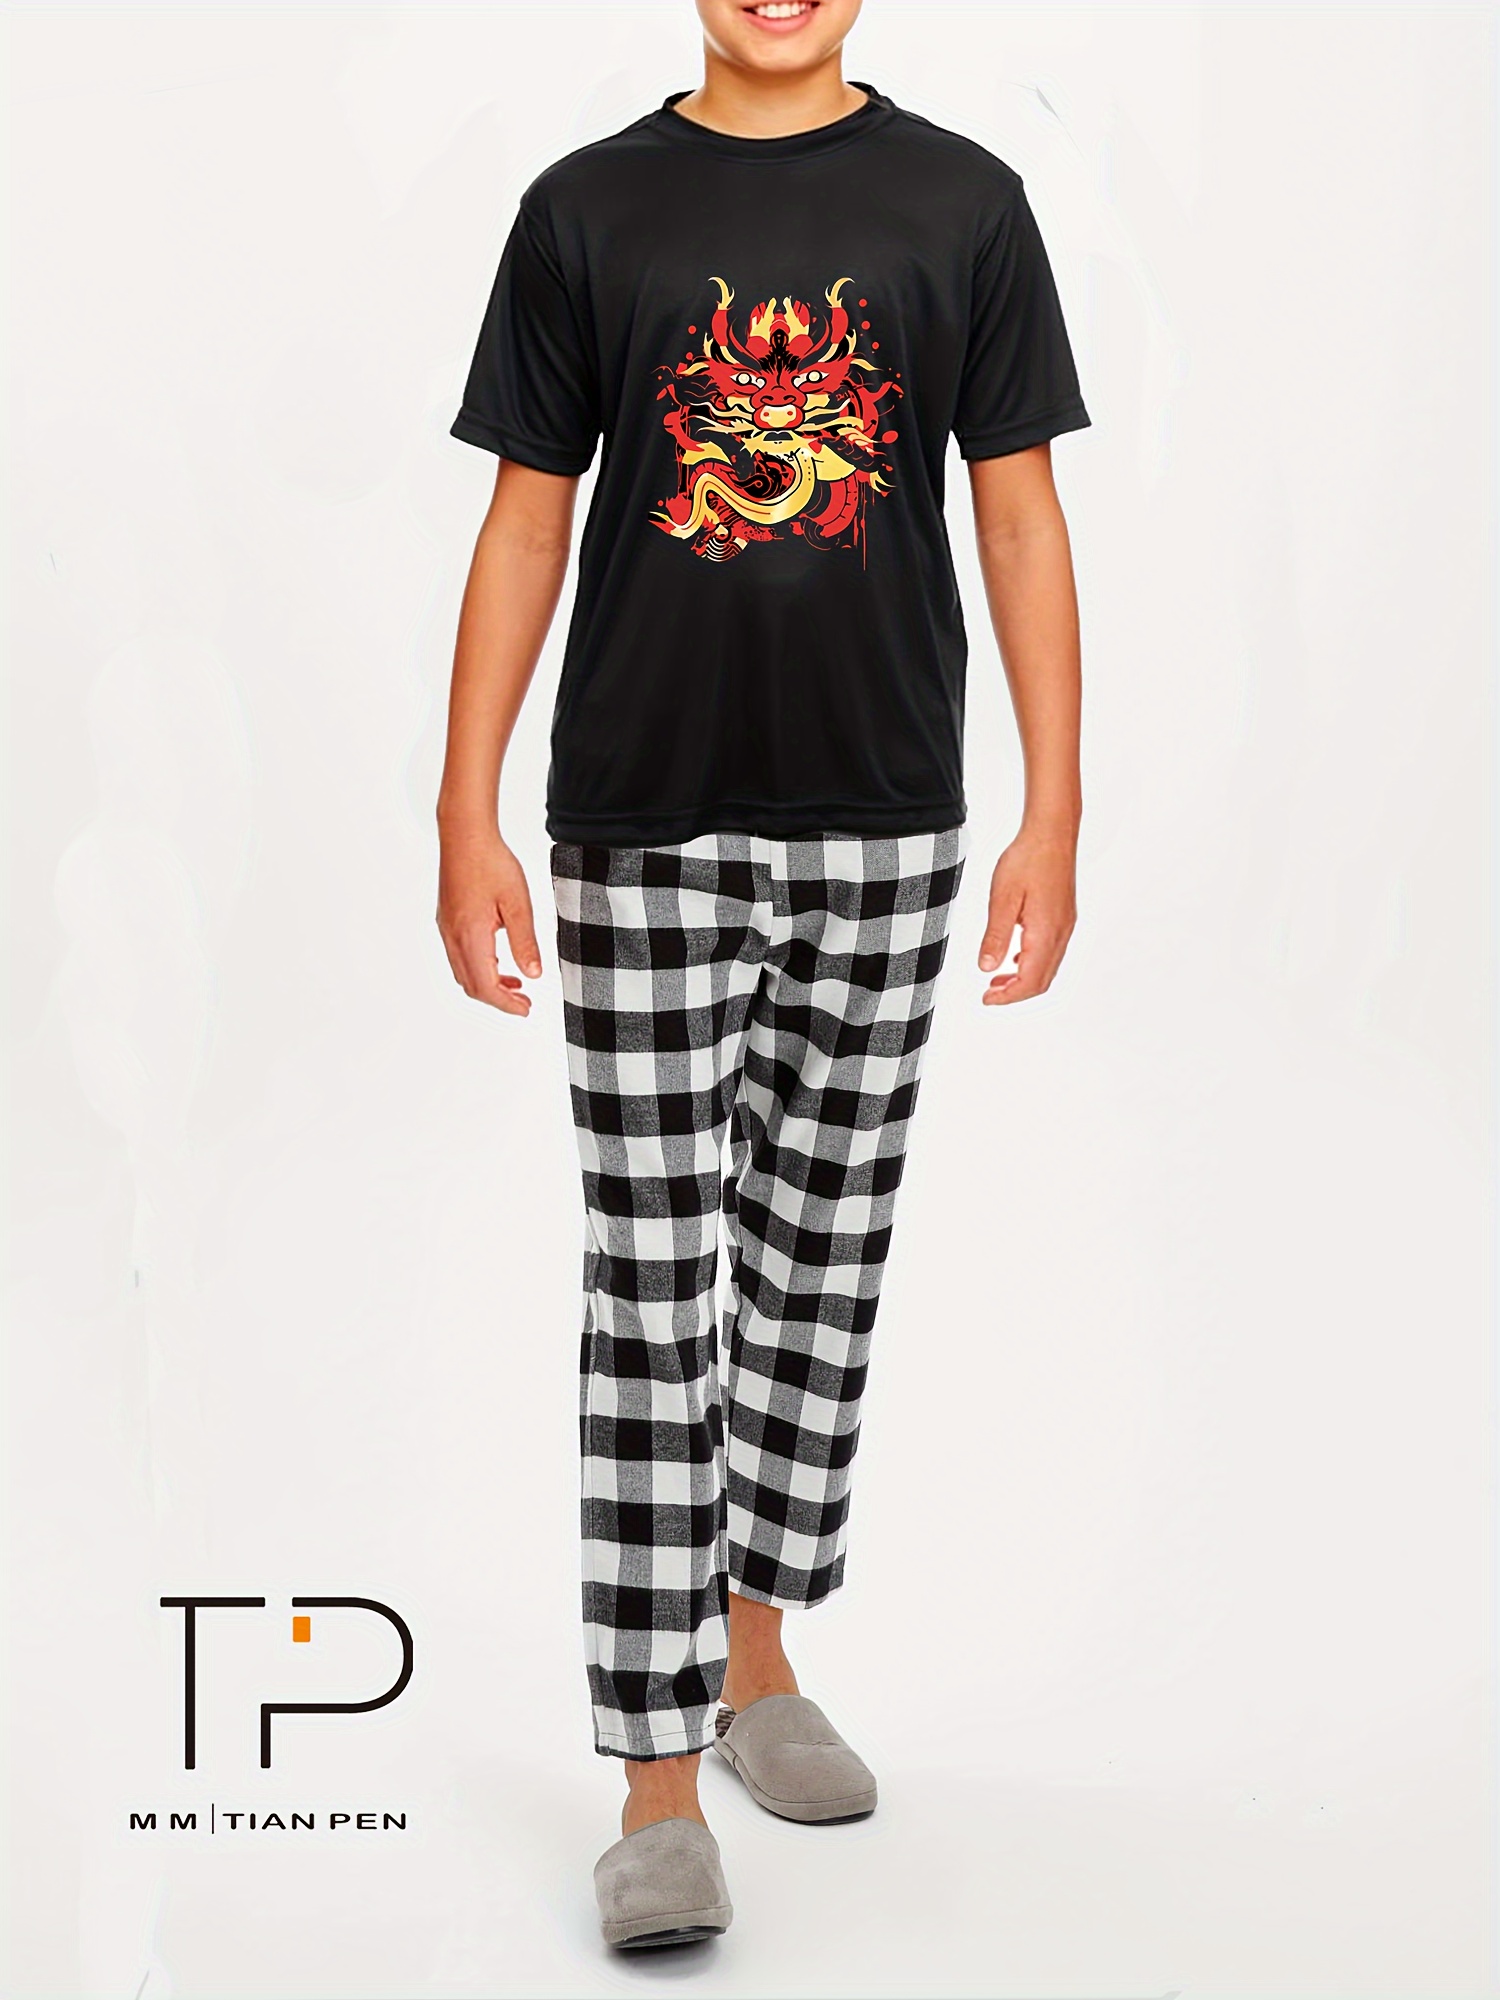 Cars Lightning Mcqueen Printed Kids Boys Long Sleeve Tops + Pants Casual  Pajamas Pjs Set Sleepwear Nightwear